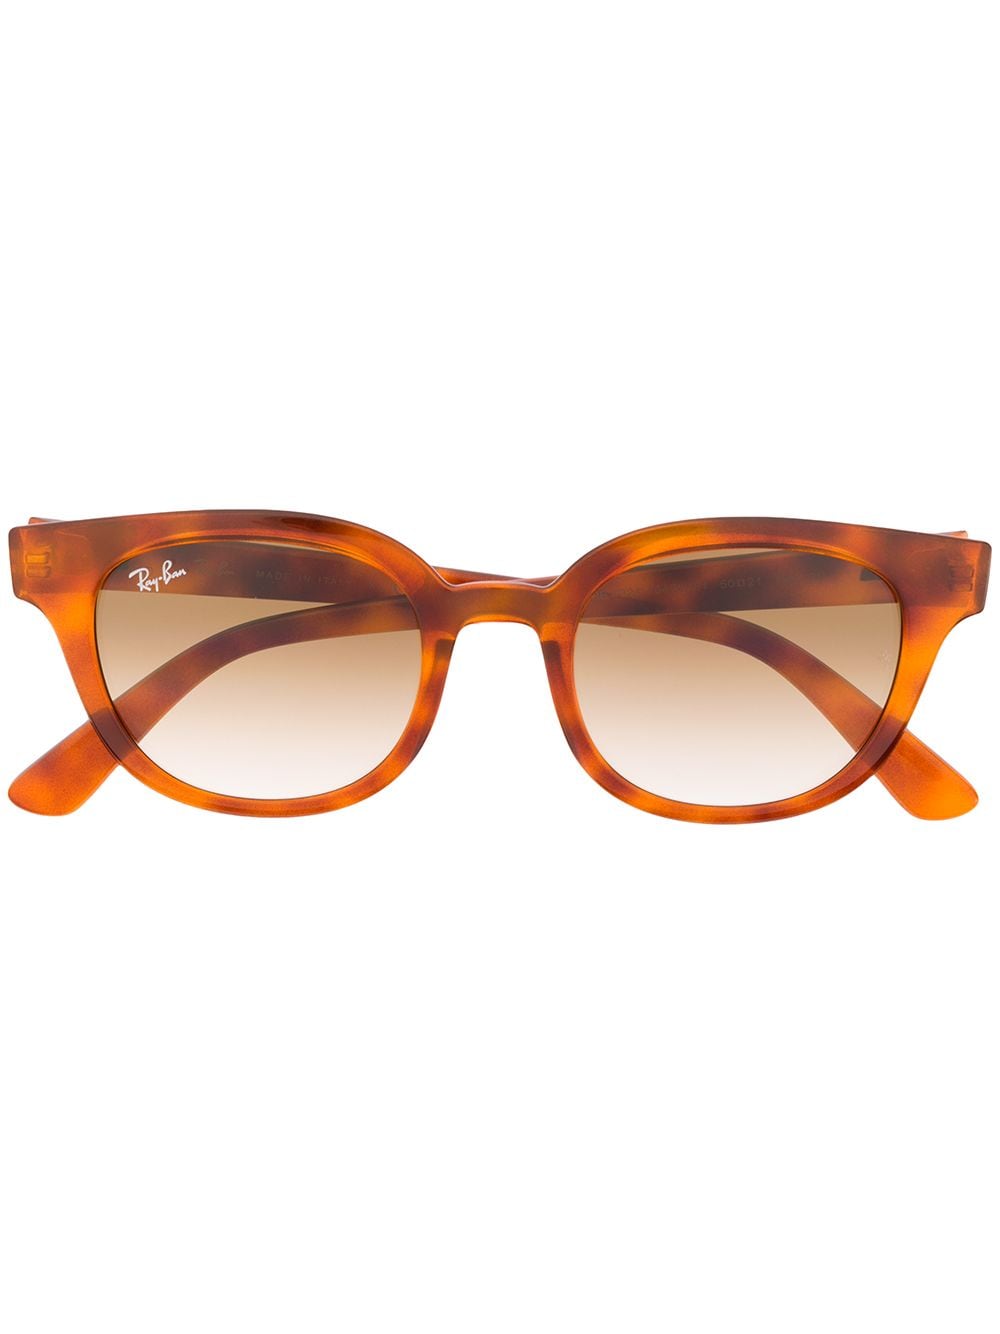 фото Ray-ban солнцезащитные очки в оправе черепаховой расцветки